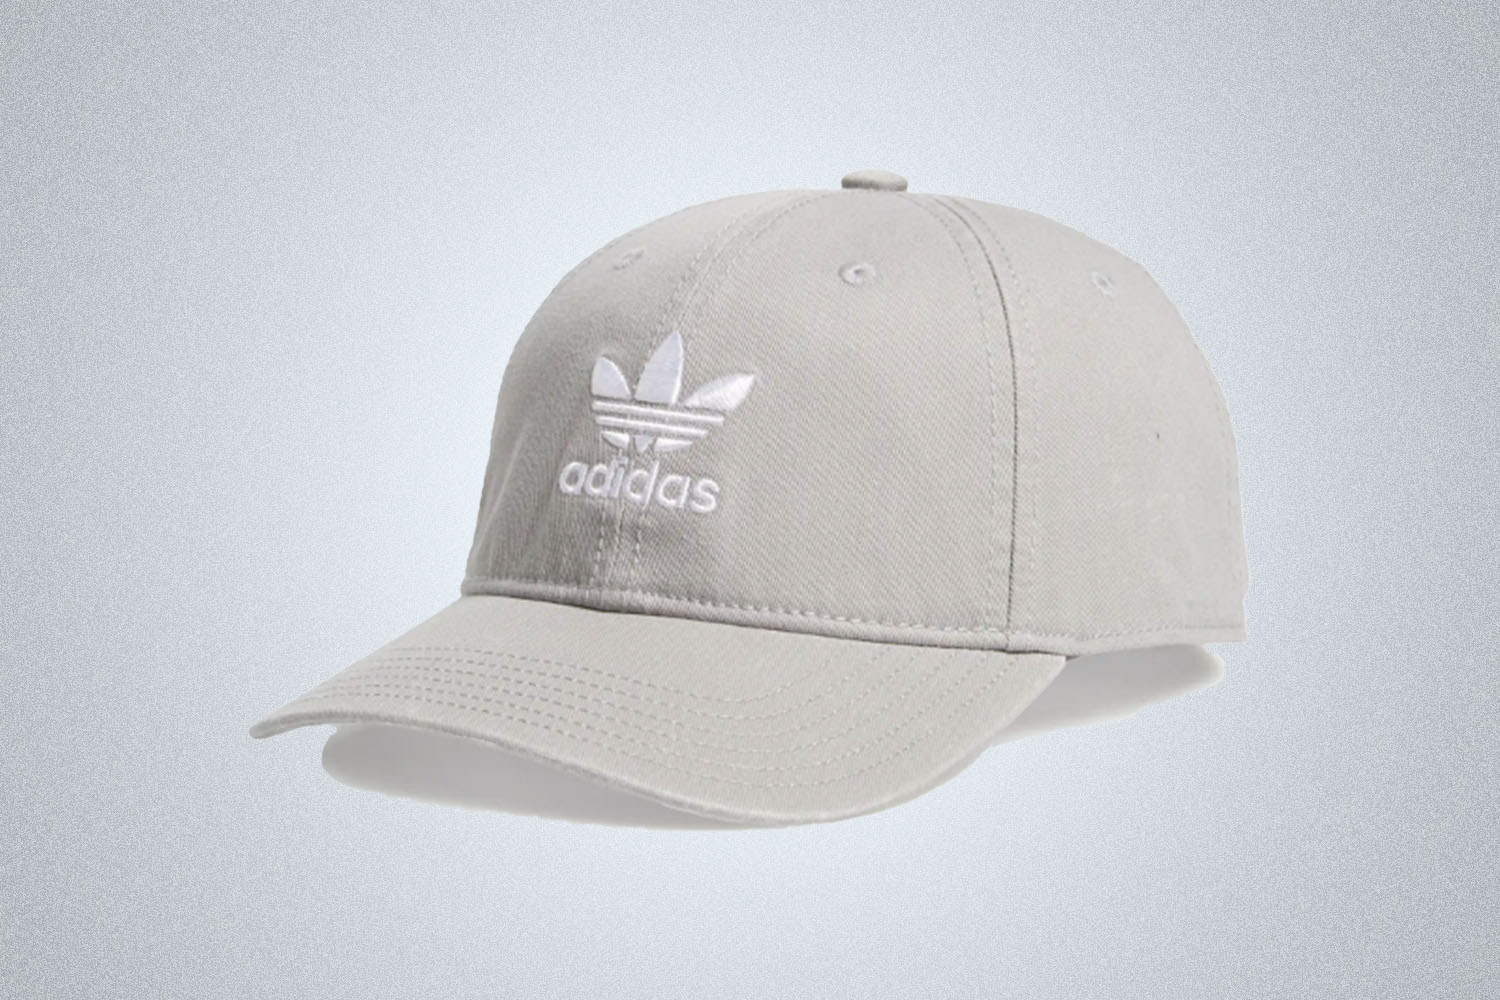 a grey adidas logo cap on a grey background